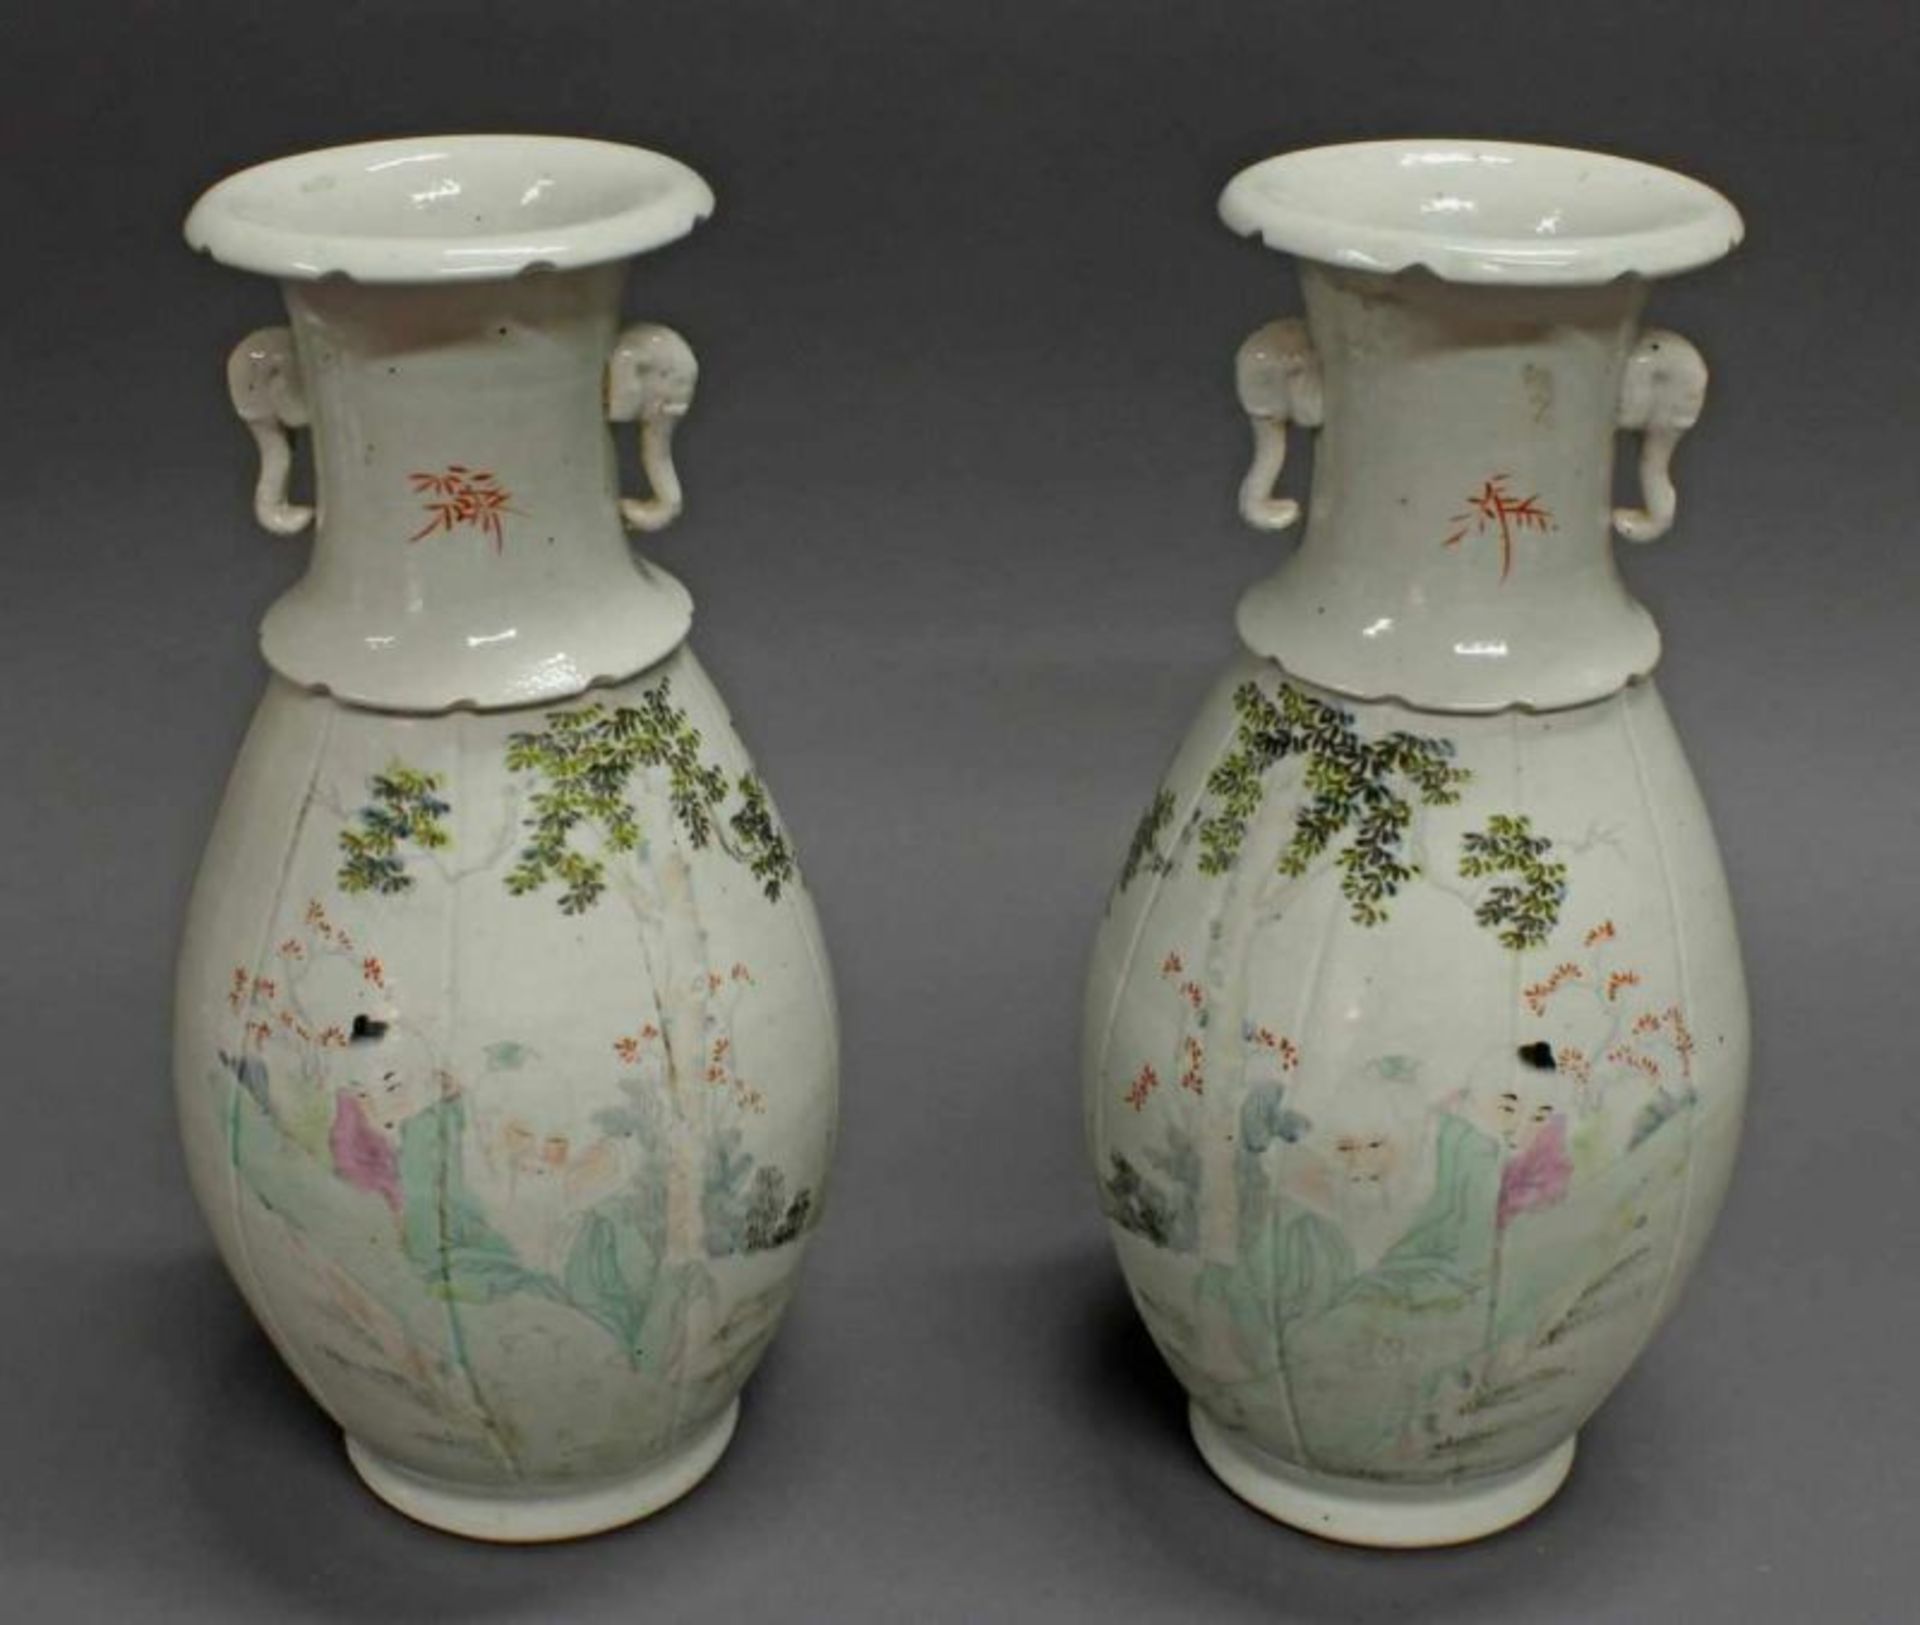 Paar Vasen, China, 20. Jh., Porzellan, polychrome Bemalung, Chinesen unter Baum sitzend,